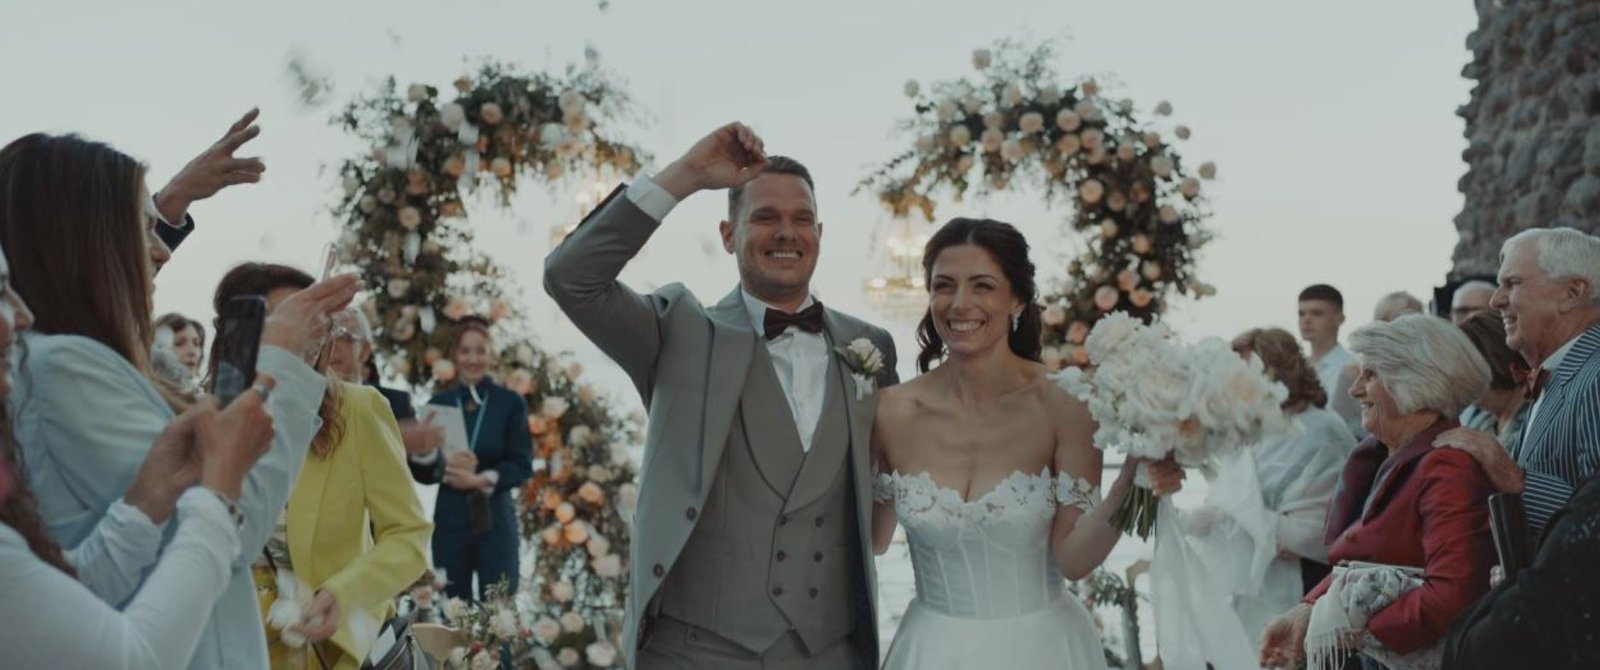 Videografo per Matrimoni di Destinazione: Cattura la Magia del Tuo Giorno Speciale in Italia